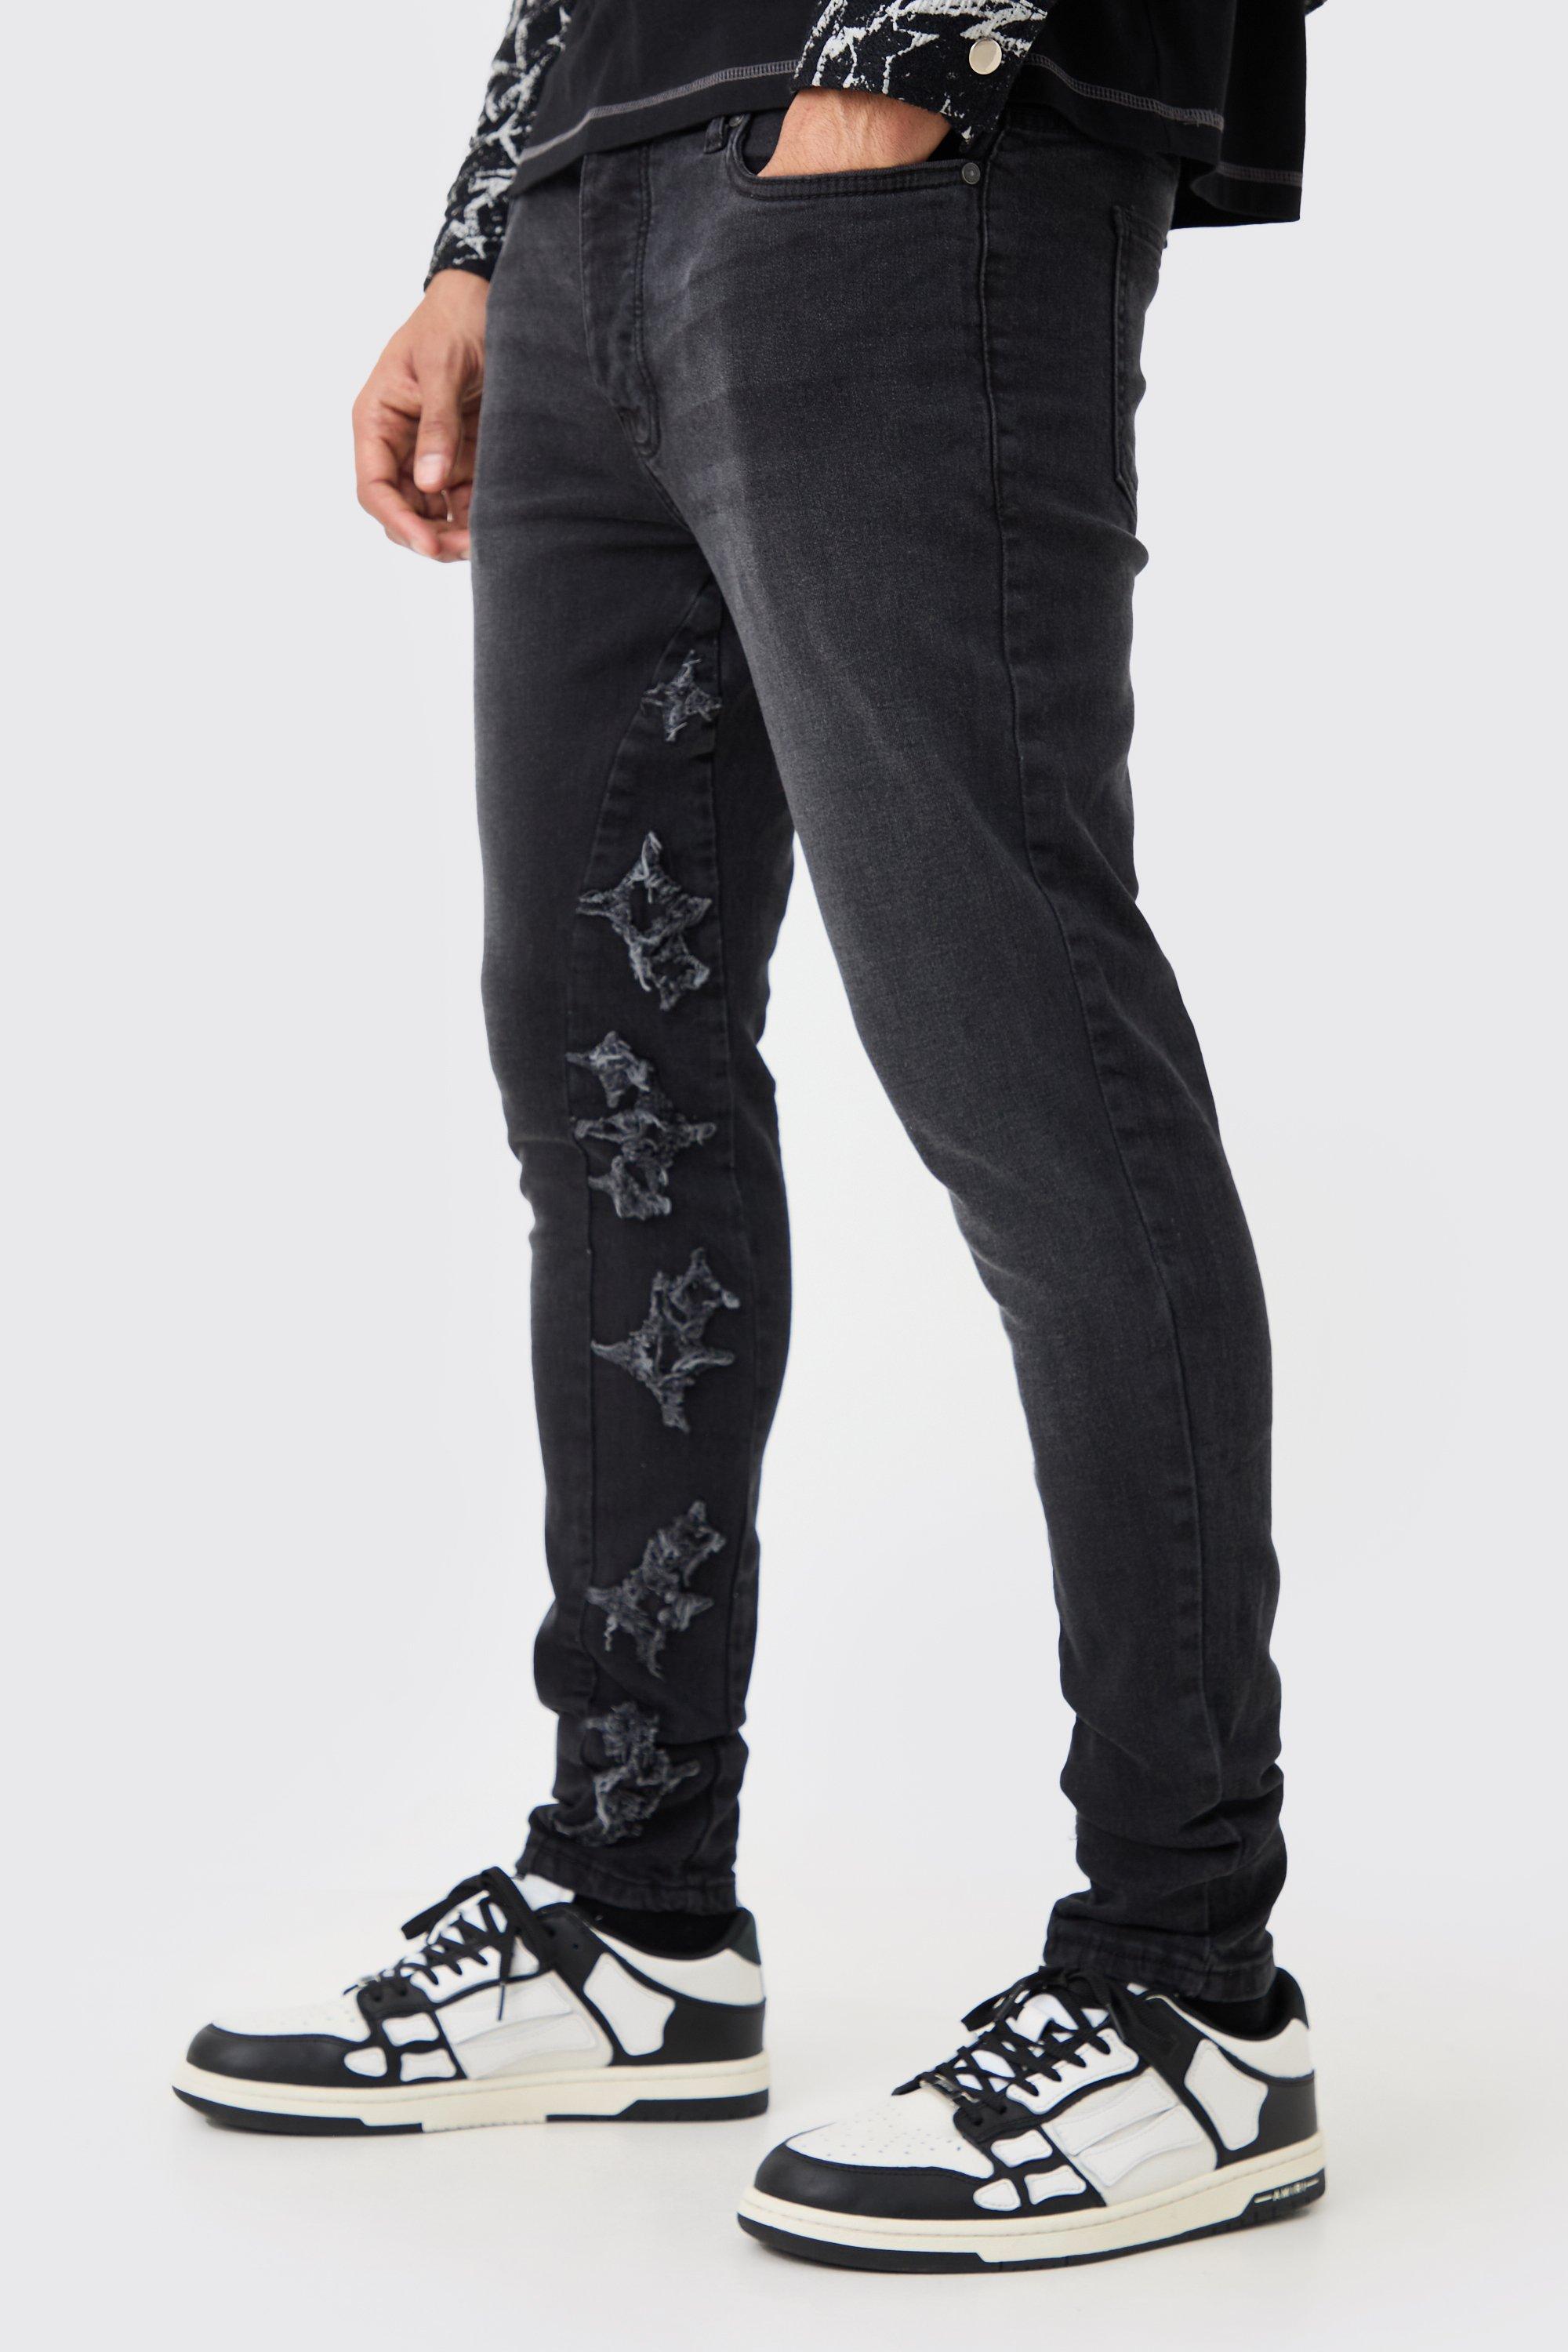 Image of Jeans Skinny Fit Stretch in nero slavato con applique e inserti, Nero